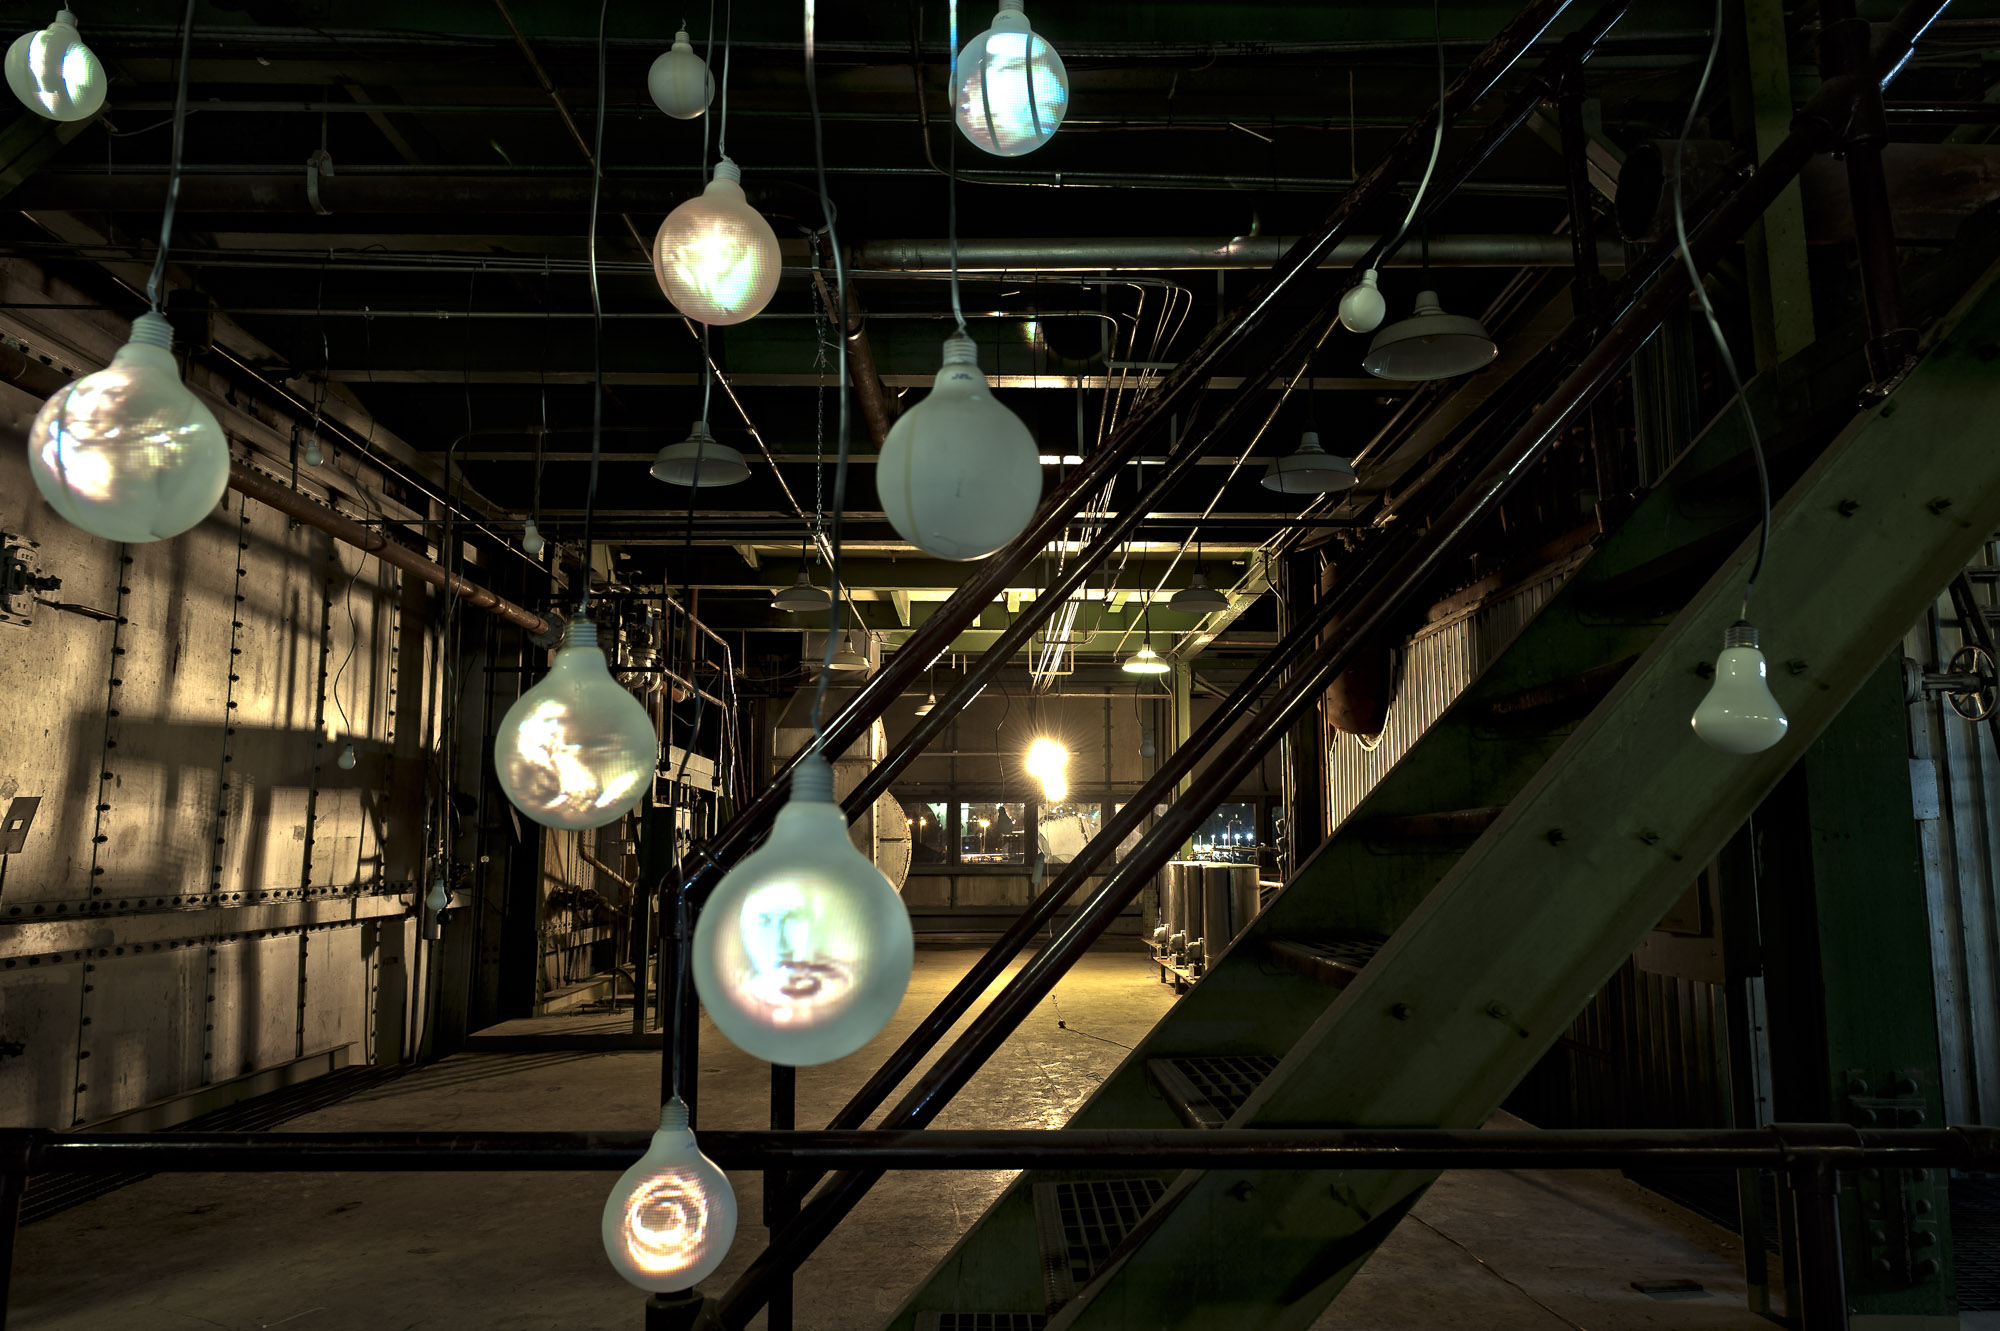 Incandescent Light Bulb Memorial Project